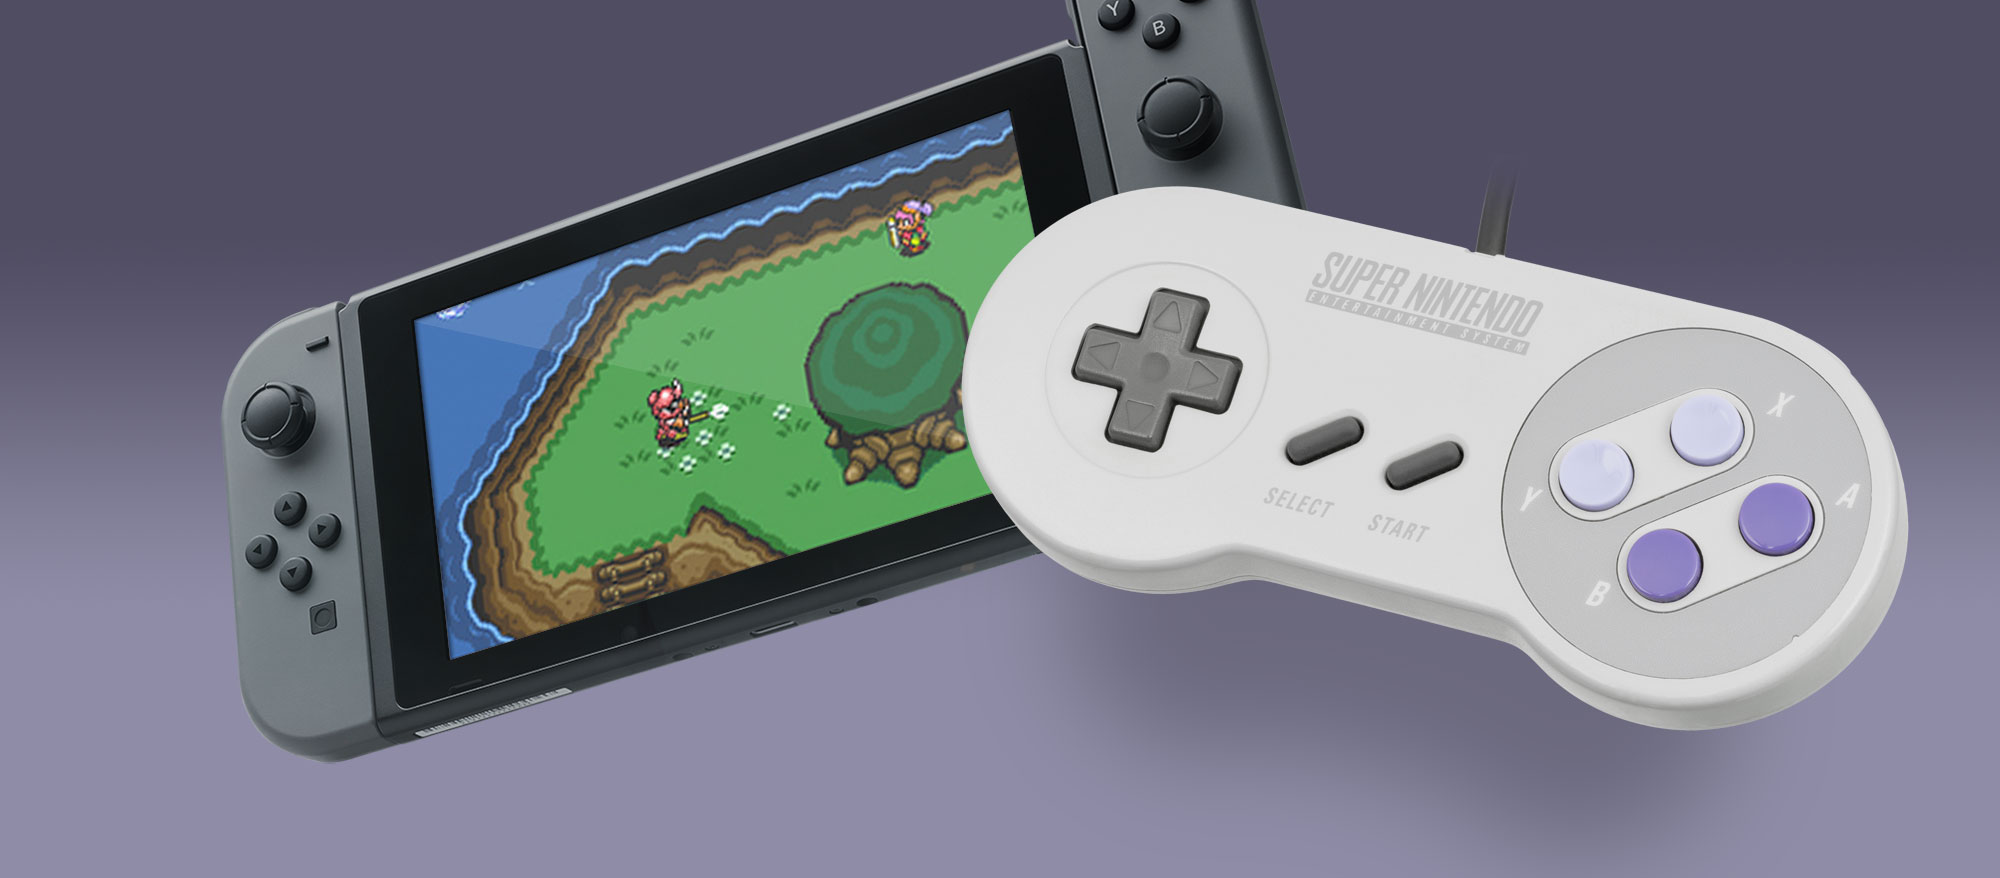 Nyt se on varmaa – SNES -pelit saapuvat Nintendo Switchille – 